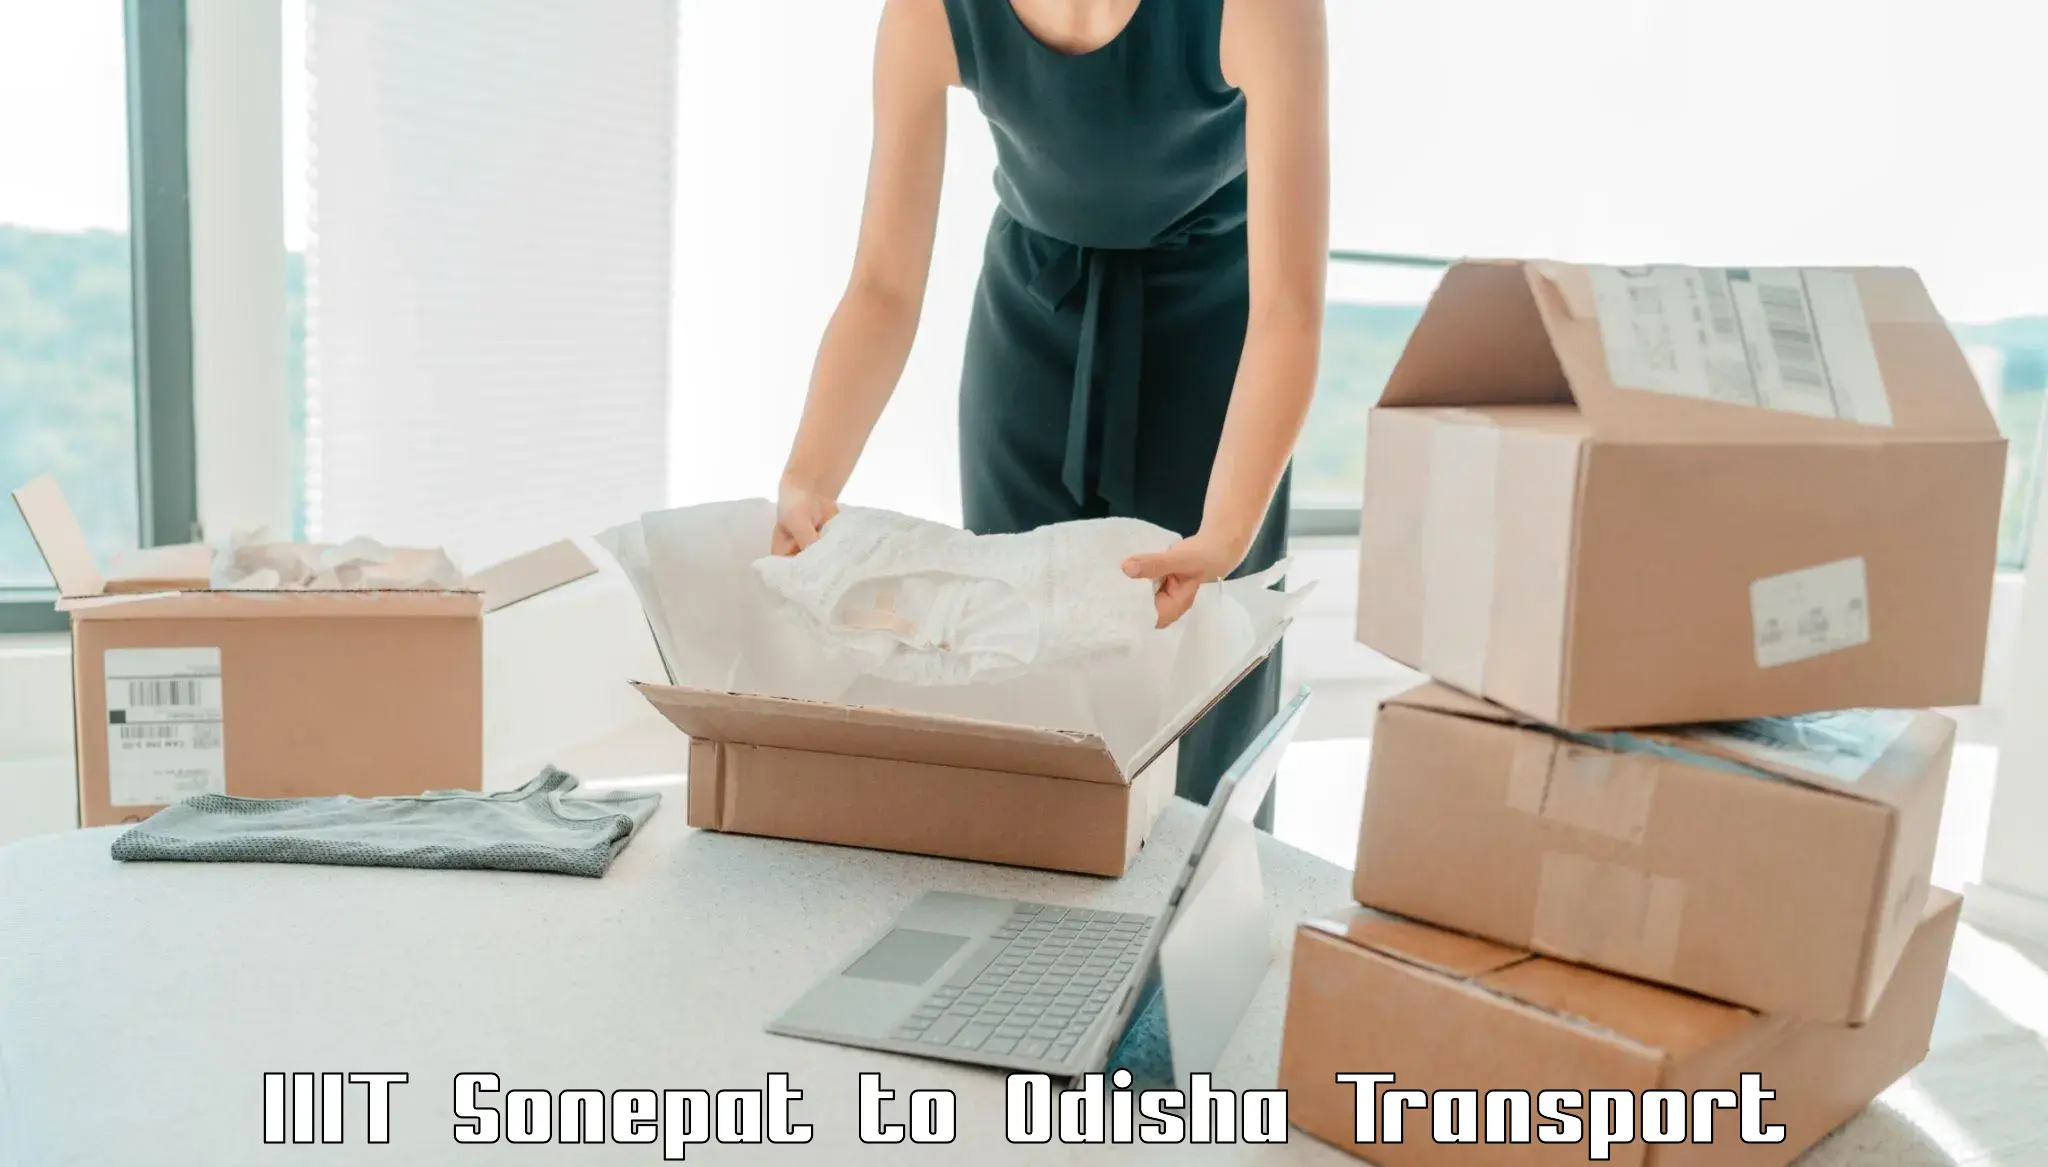 Cargo transport services IIIT Sonepat to Chandinchowk